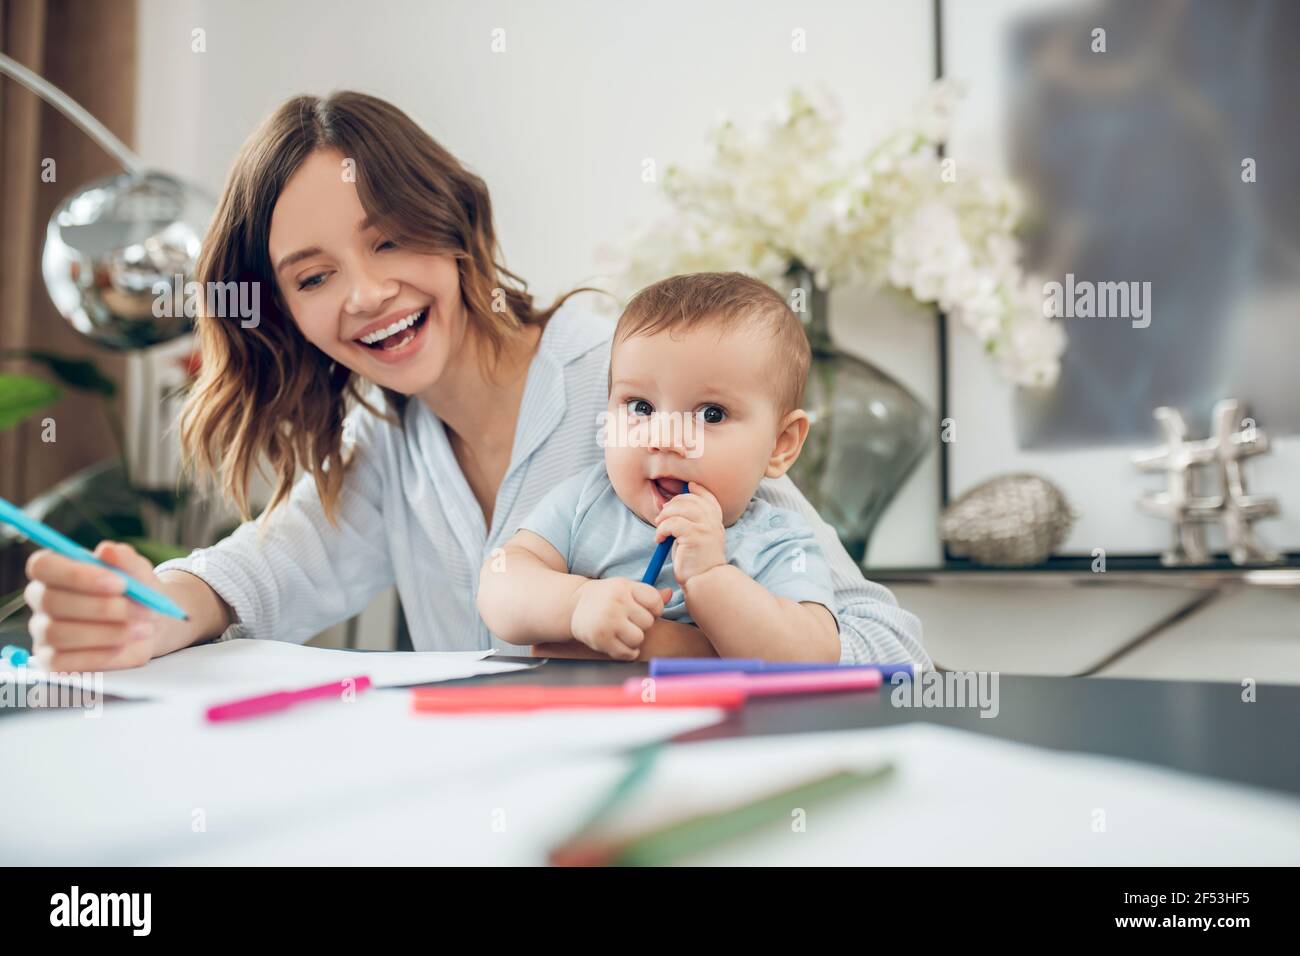 Un crayon de mise en plan pour maman et enfant enthousiaste Banque D'Images